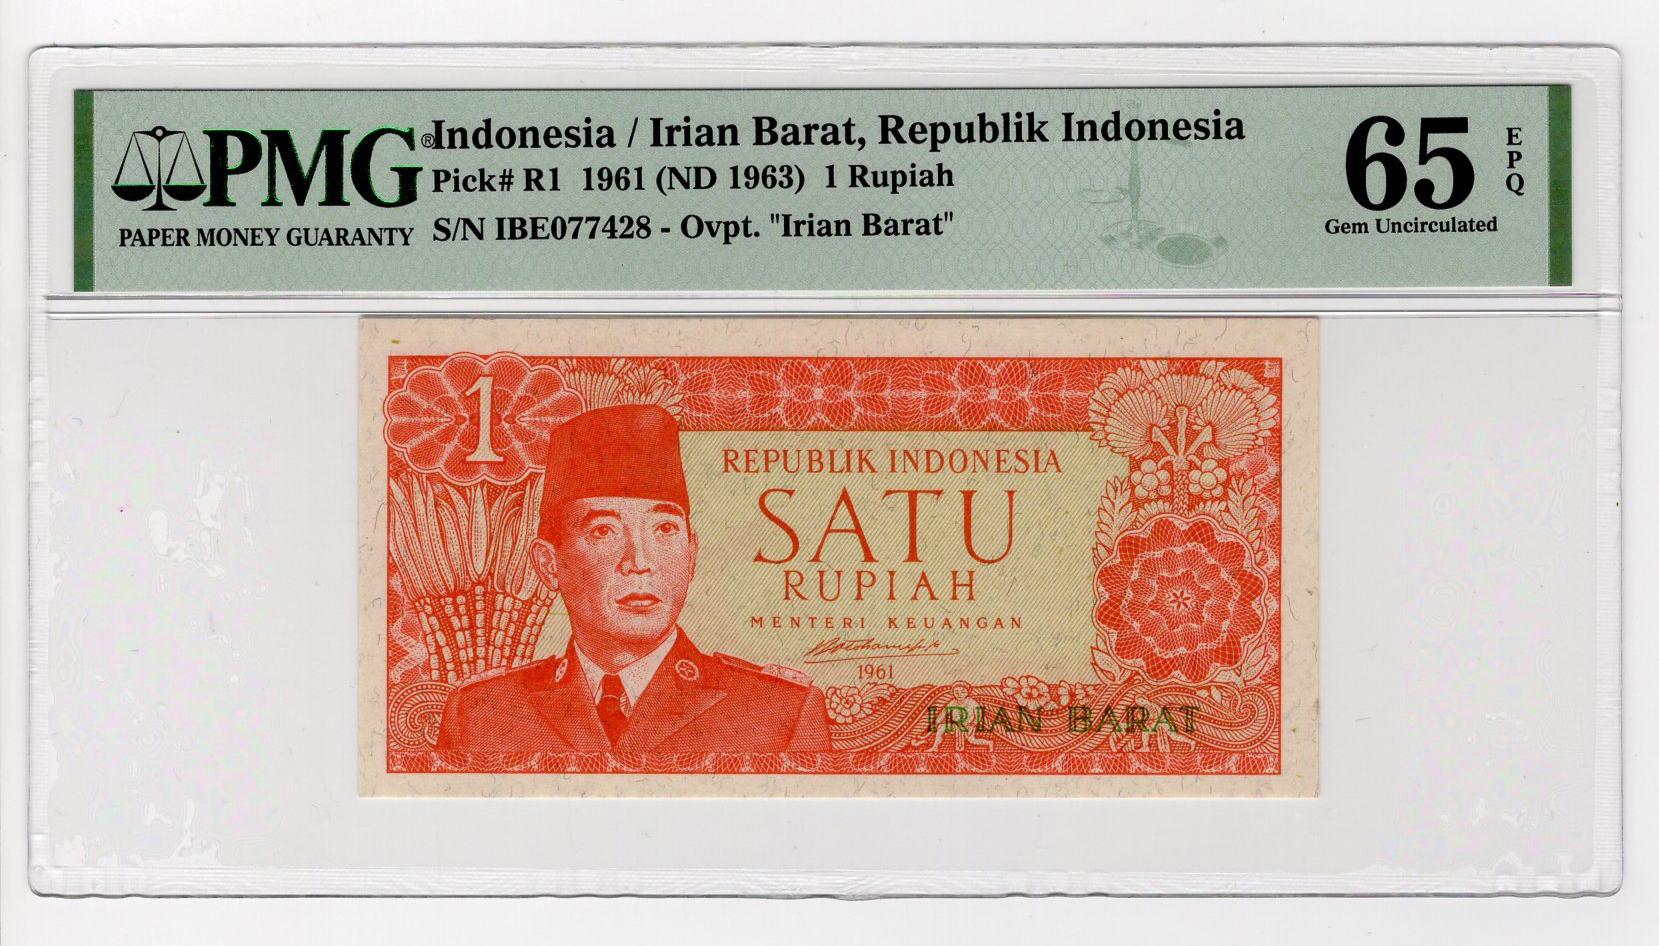 Indonesia 1 Rupiah dated 1960 (issued 1963), Republik Indonesia Irian Barat provisional issue,